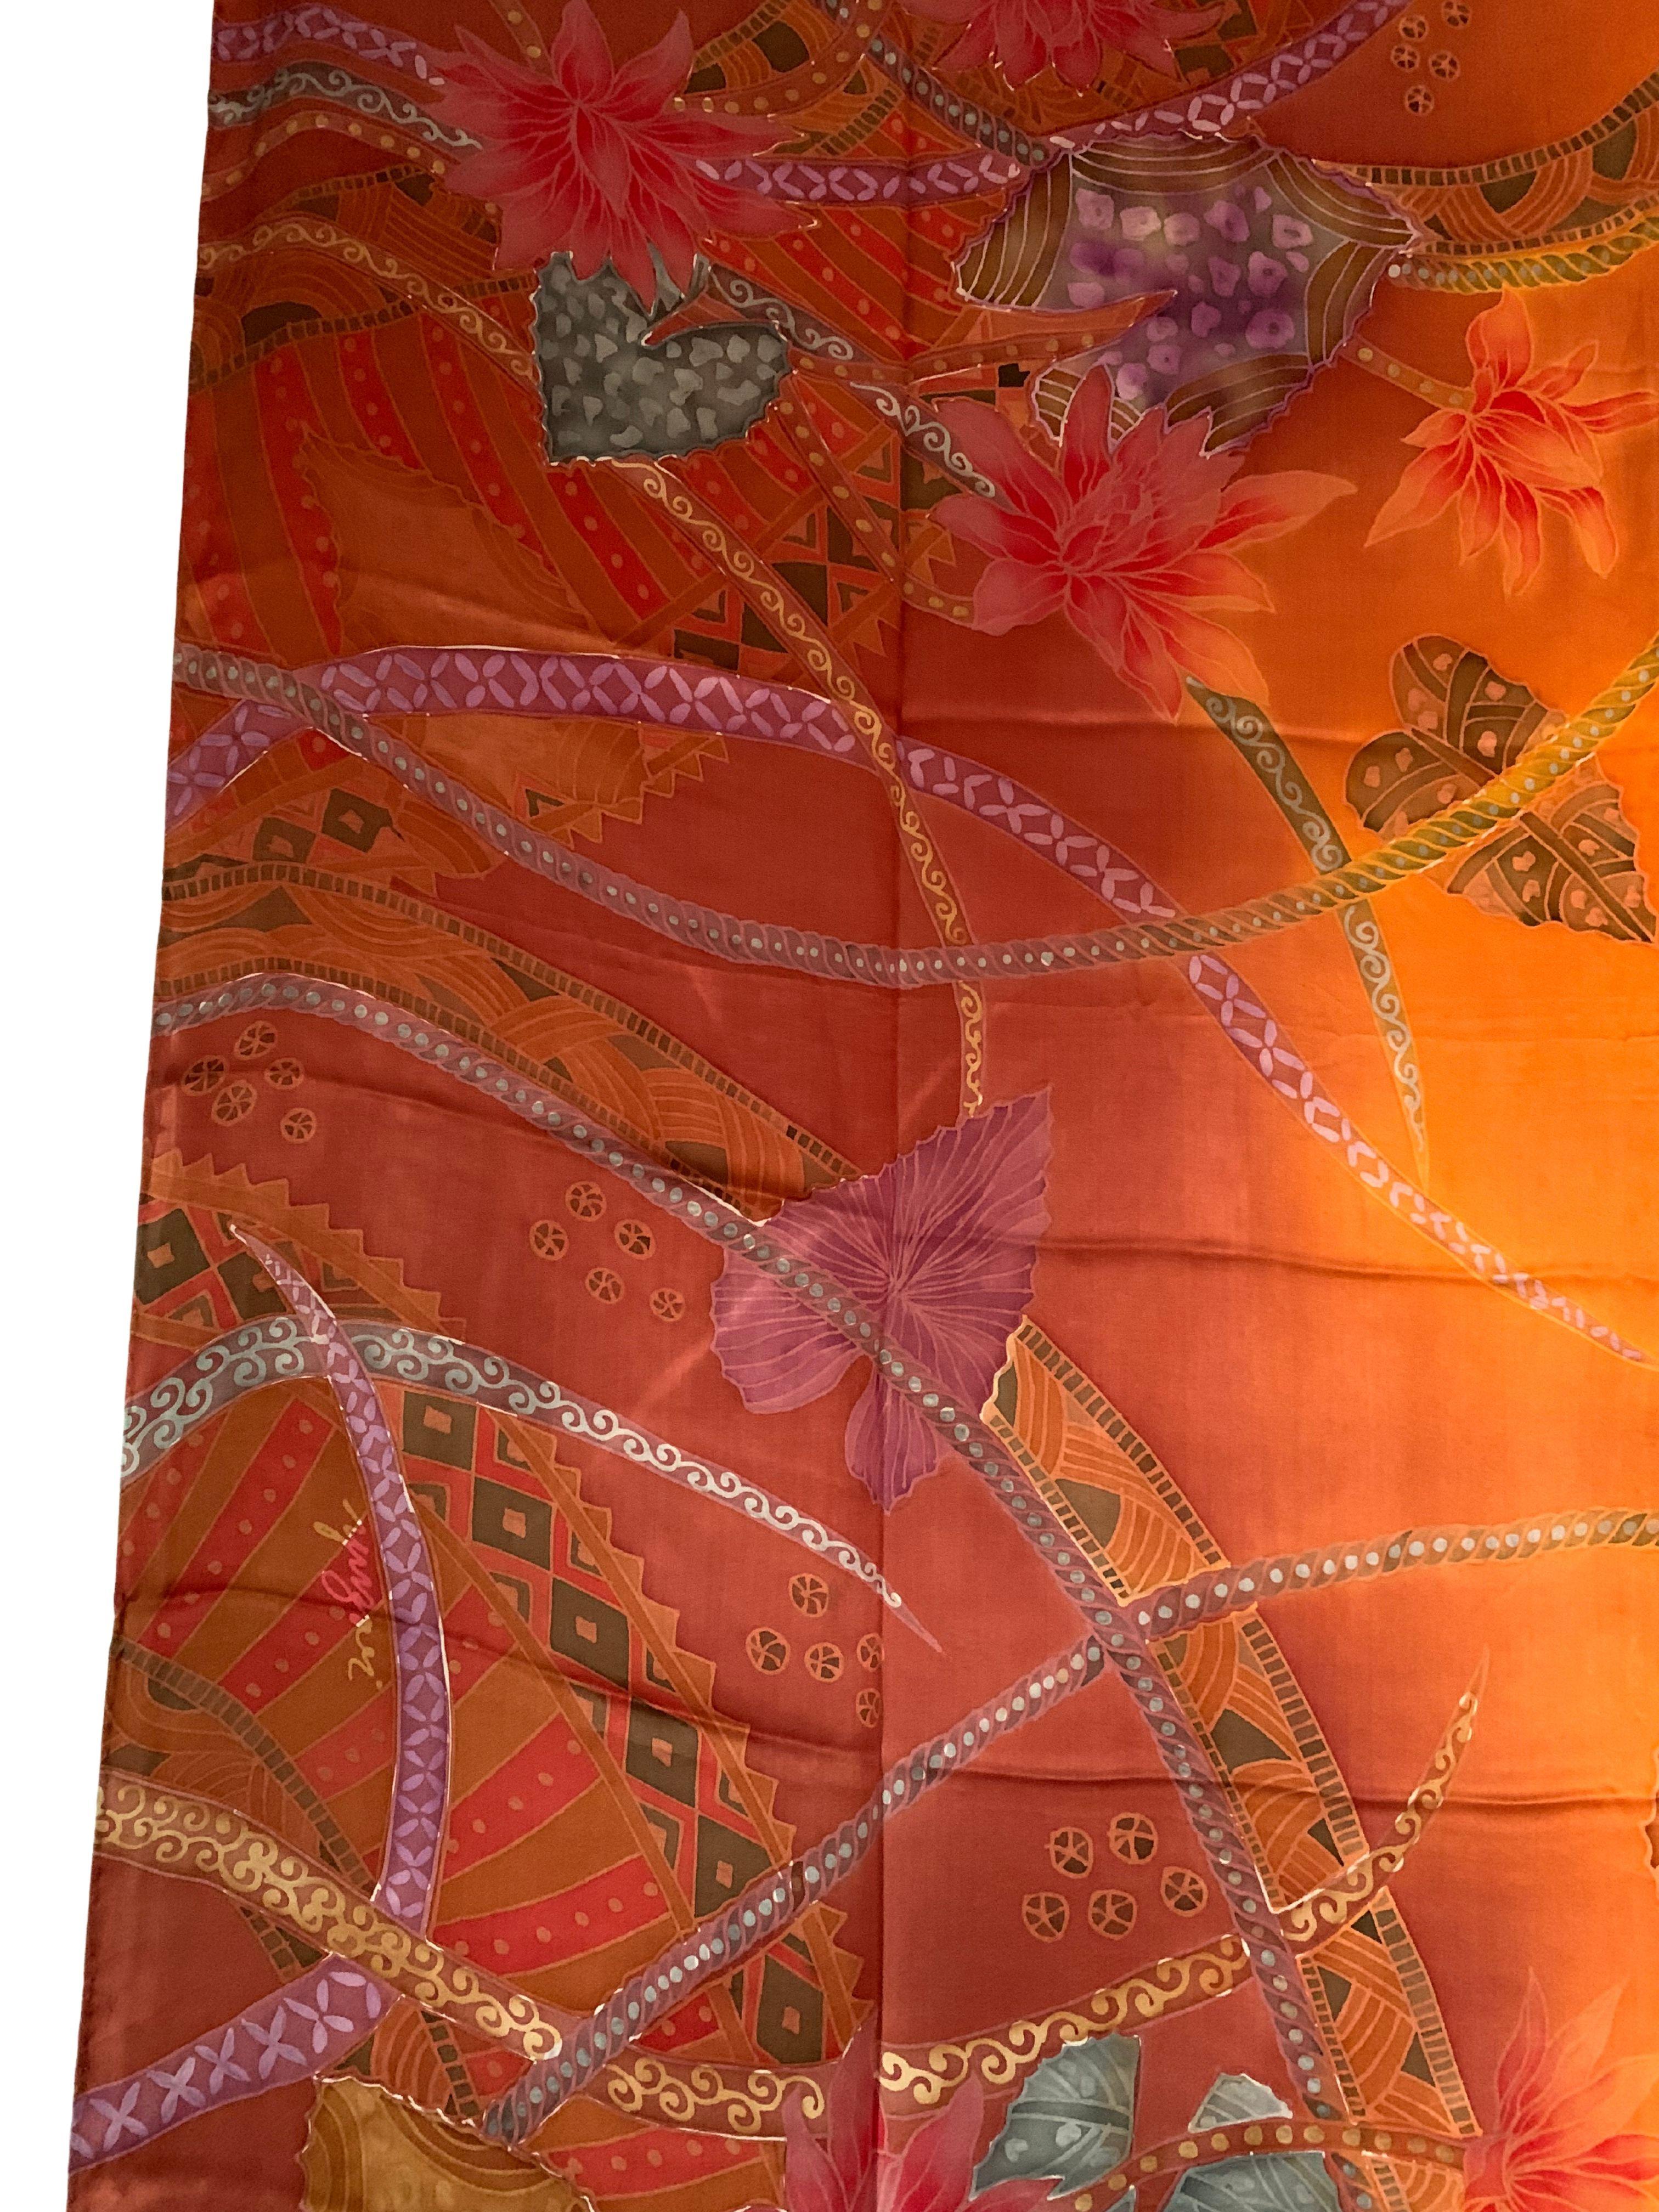 Un merveilleux textile de soie artisanal de Malaisie avec des détails et des nuances étonnants. Un merveilleux objet décoratif pour apporter chaleur et couleur à tout espace. Ce textile a été fabriqué à la main par des tisserands locaux. 